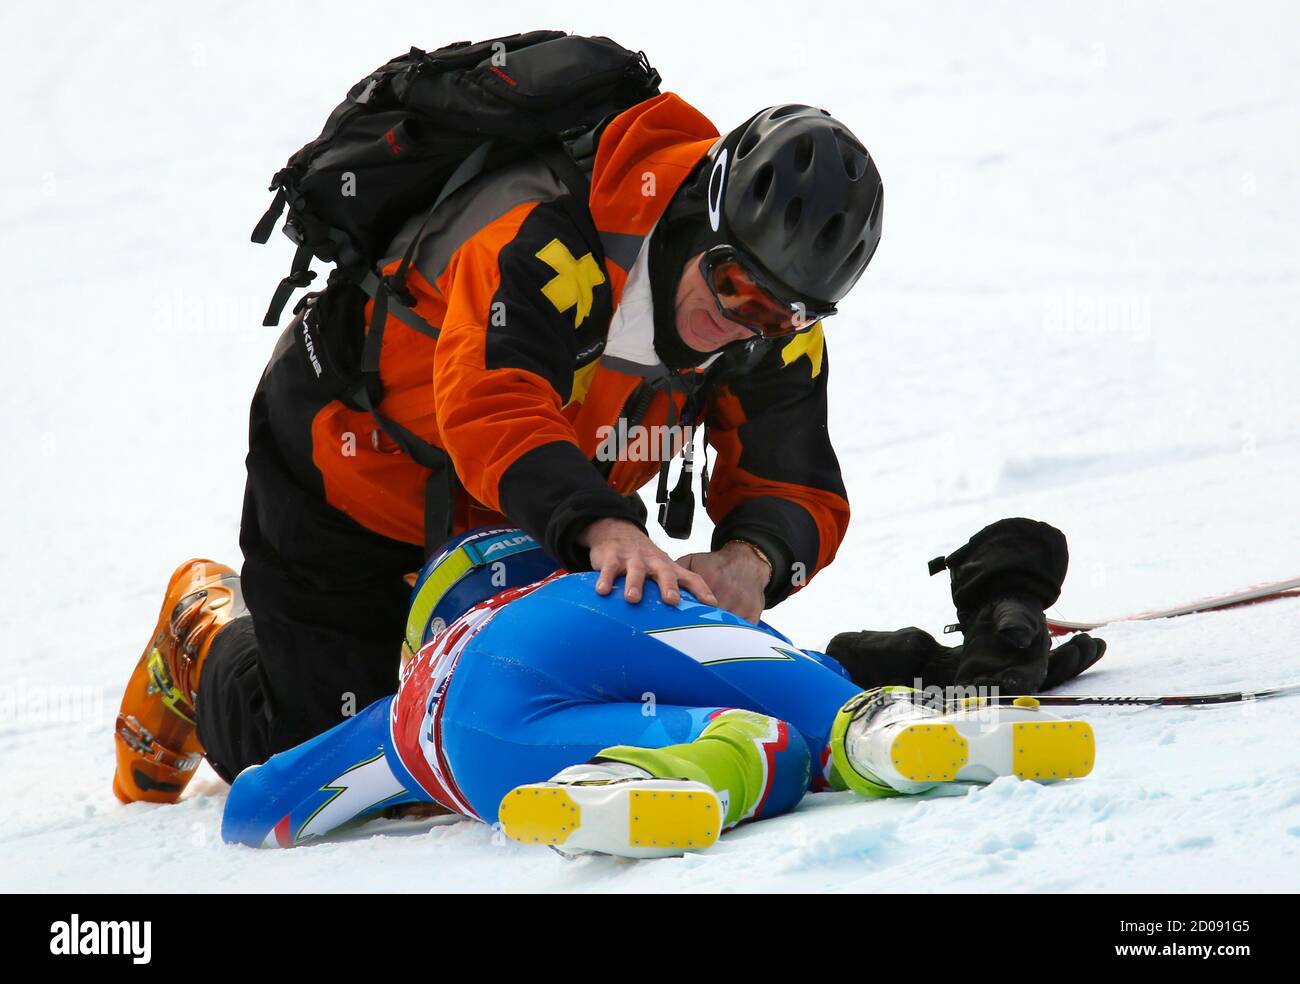 Marusa Ferk, de Slovénie, est suivie après une collision lors de l'entraînement de ski alpin pour la coupe du monde féminine de descente à Lake Louise, en Alberta, le 27 novembre 2012. REUTERS/Mike Blake (CANADA - Tags: SKI DE SPORT) Banque D'Images